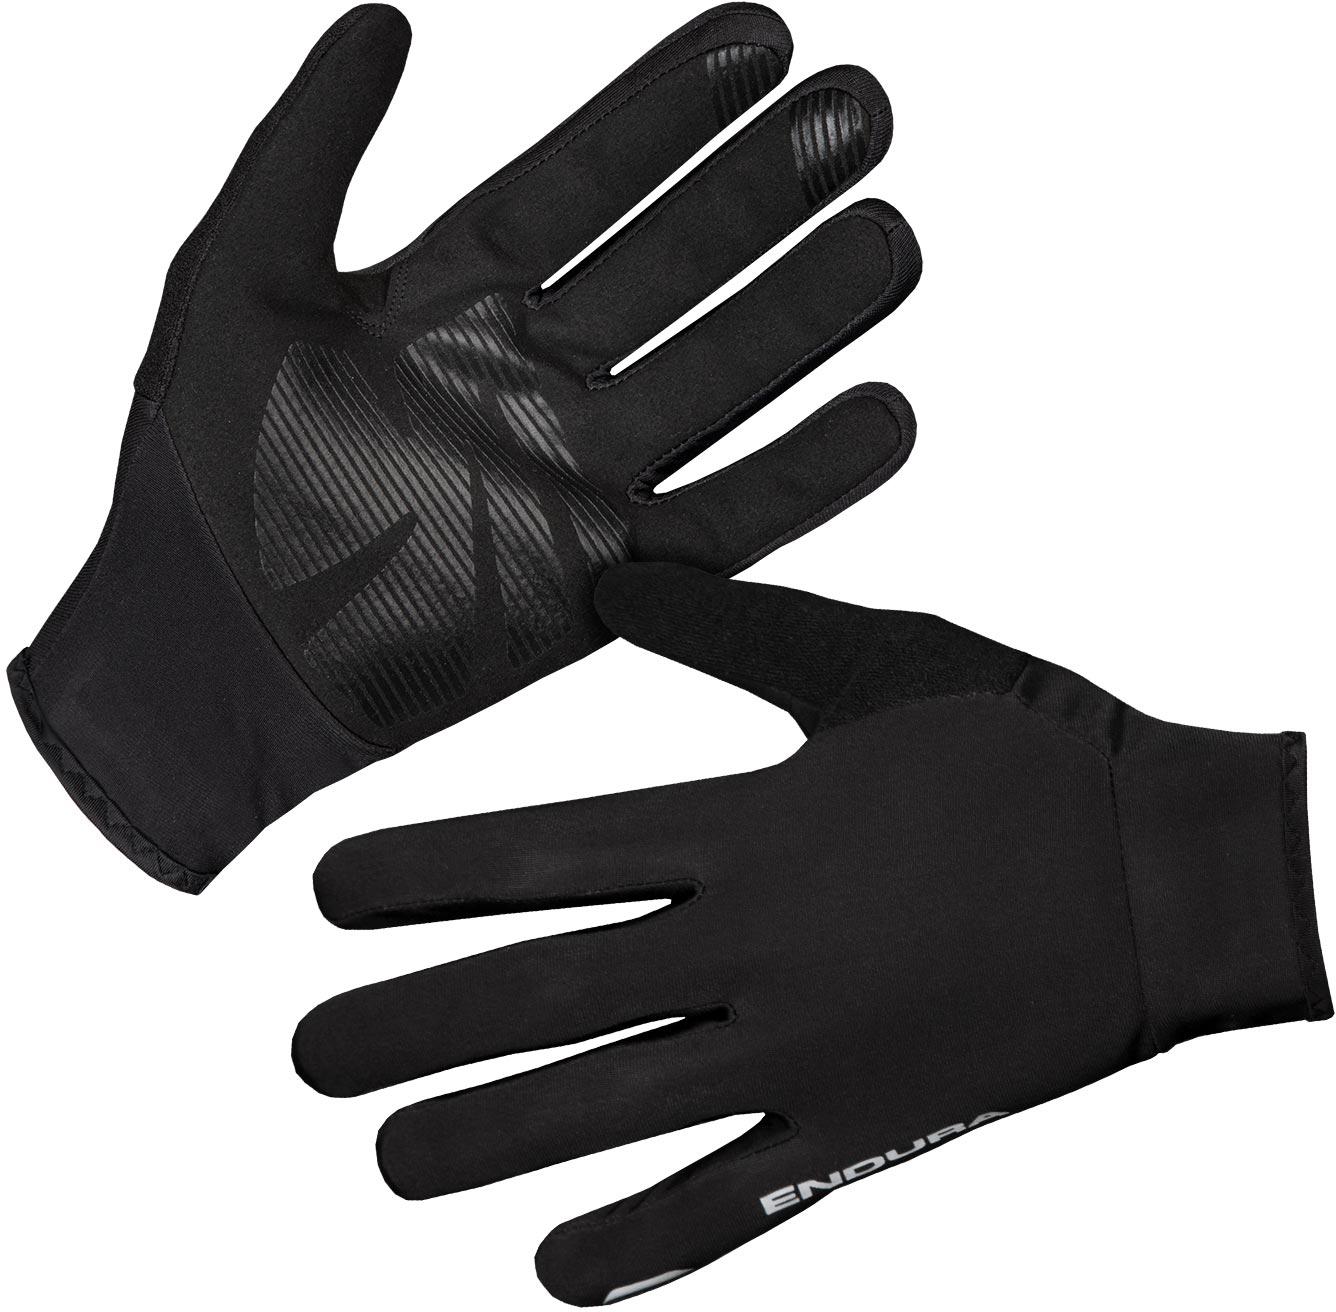 Endura Fs260-pro Thermo Glove  Black/reflective